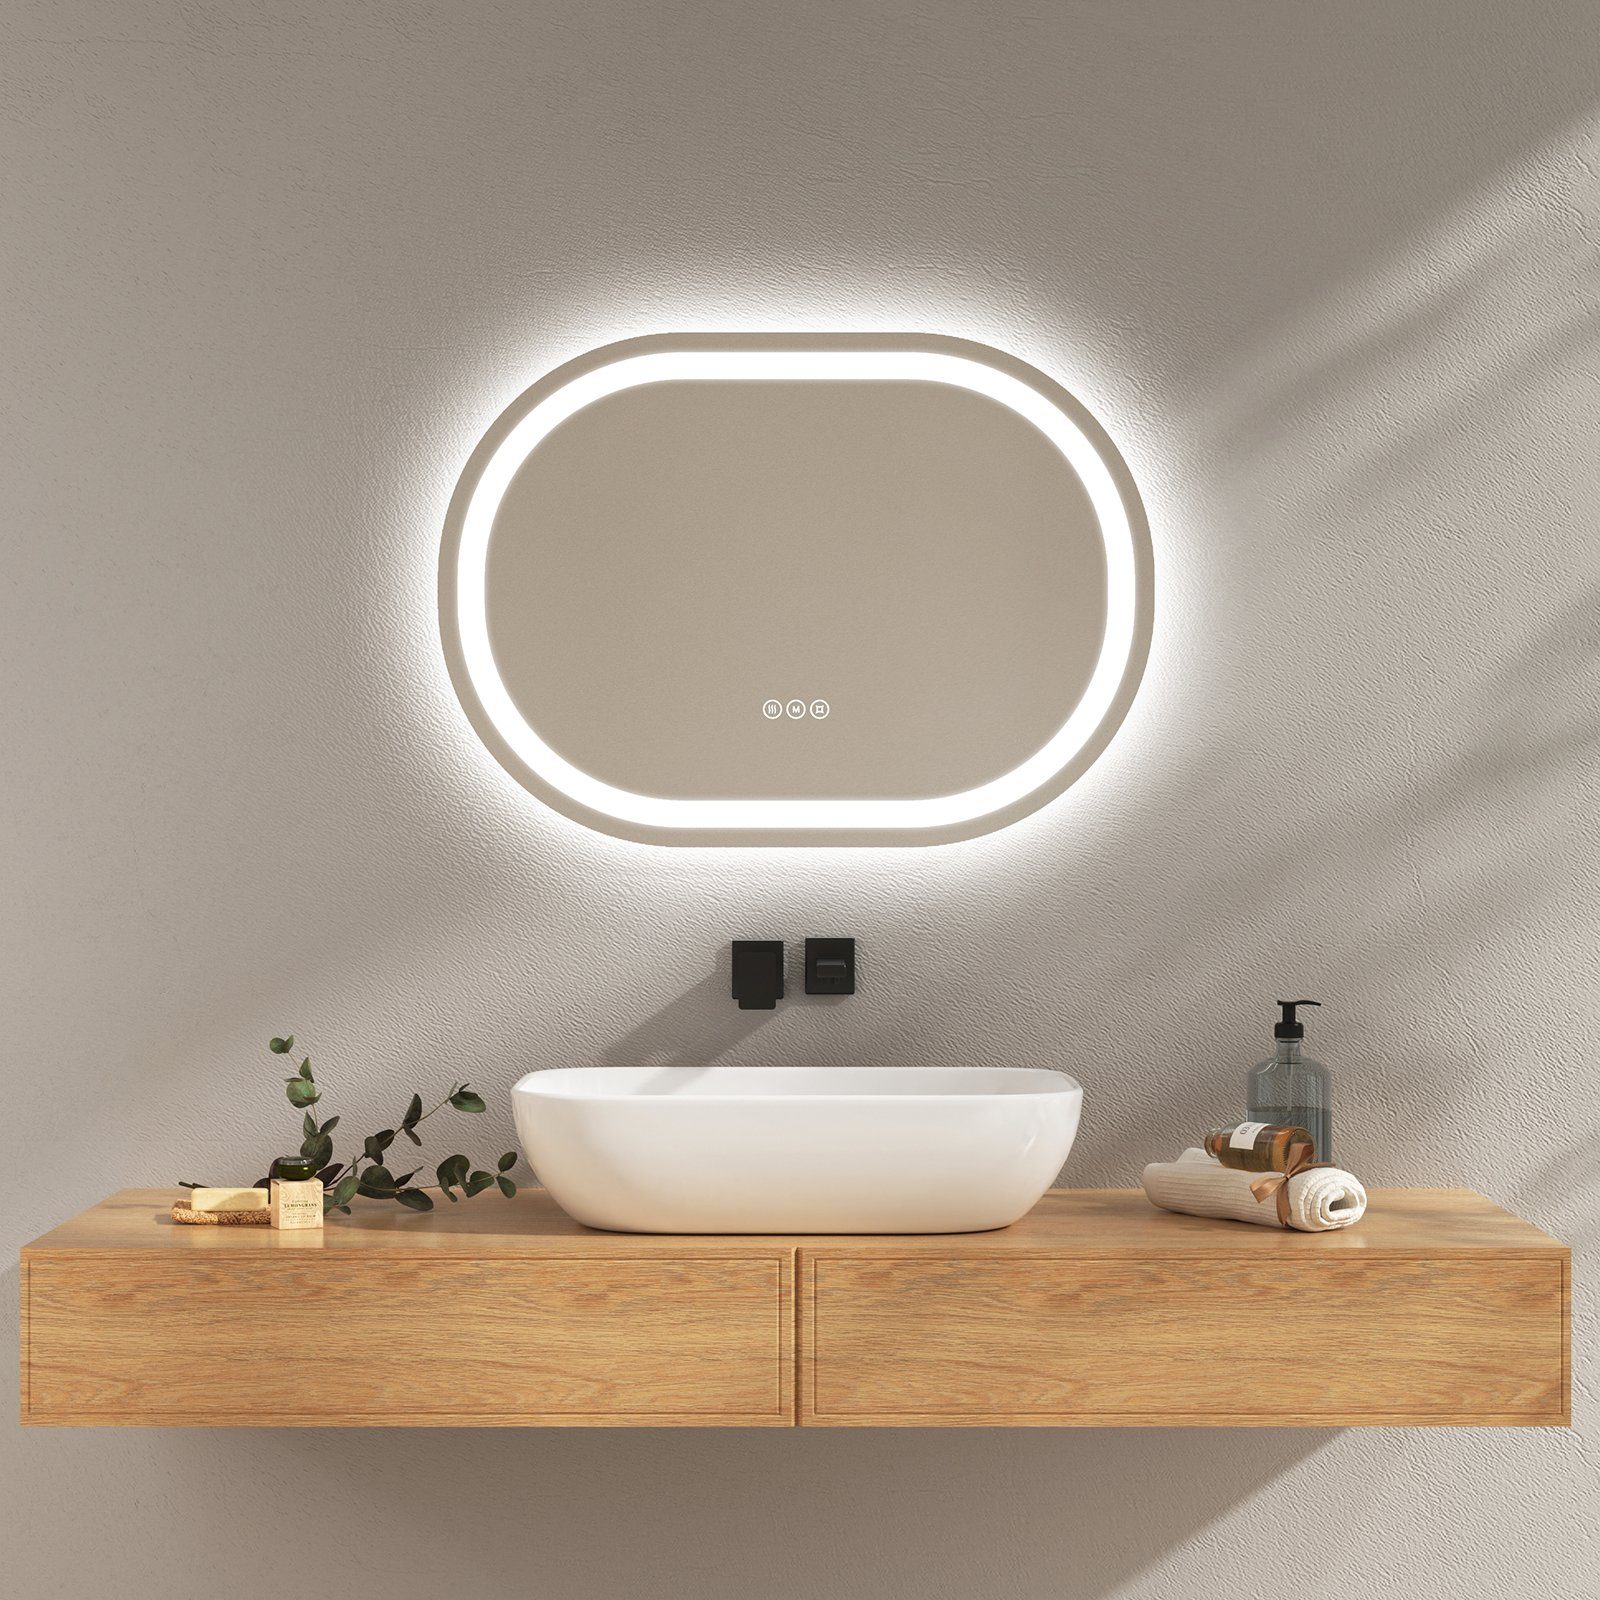 EMKE Badspiegel EMKE Spiegel Oval Badspiegel mit Beleuchtung  Badezimmerspiegel, mit Touchschalter, 3 Lichtfarben dimmbar, Beschlagfrei